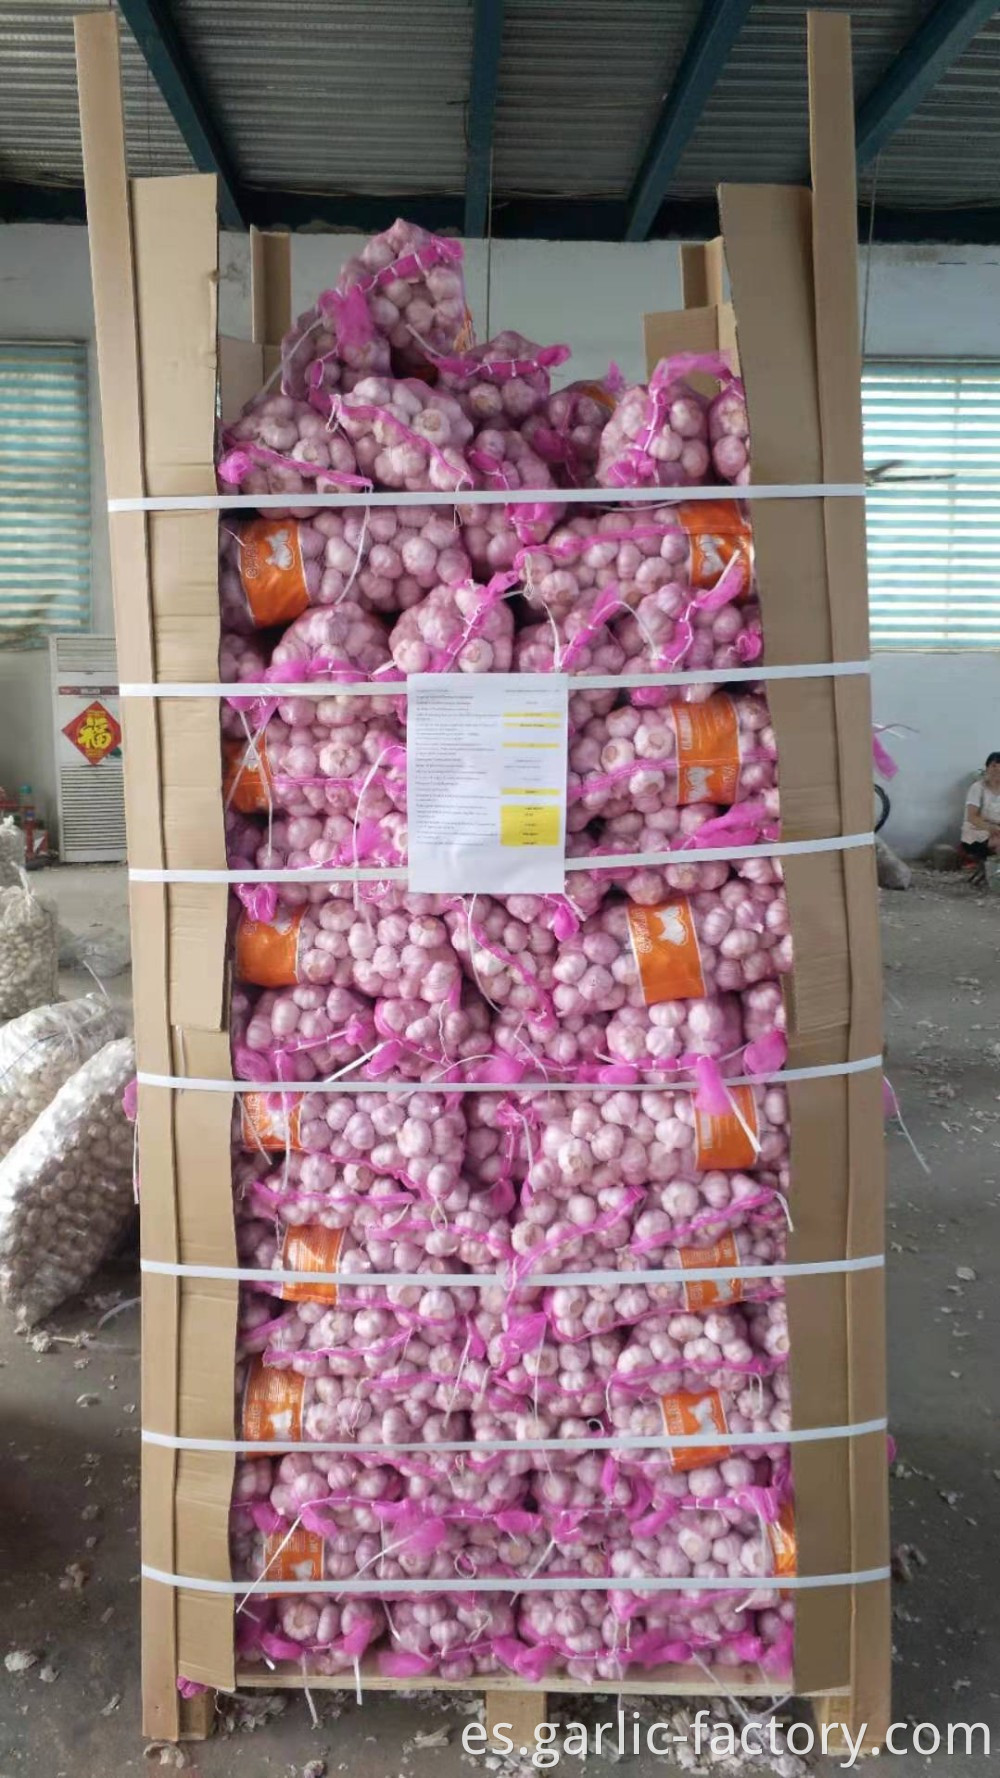 Chinese garlic exports volume